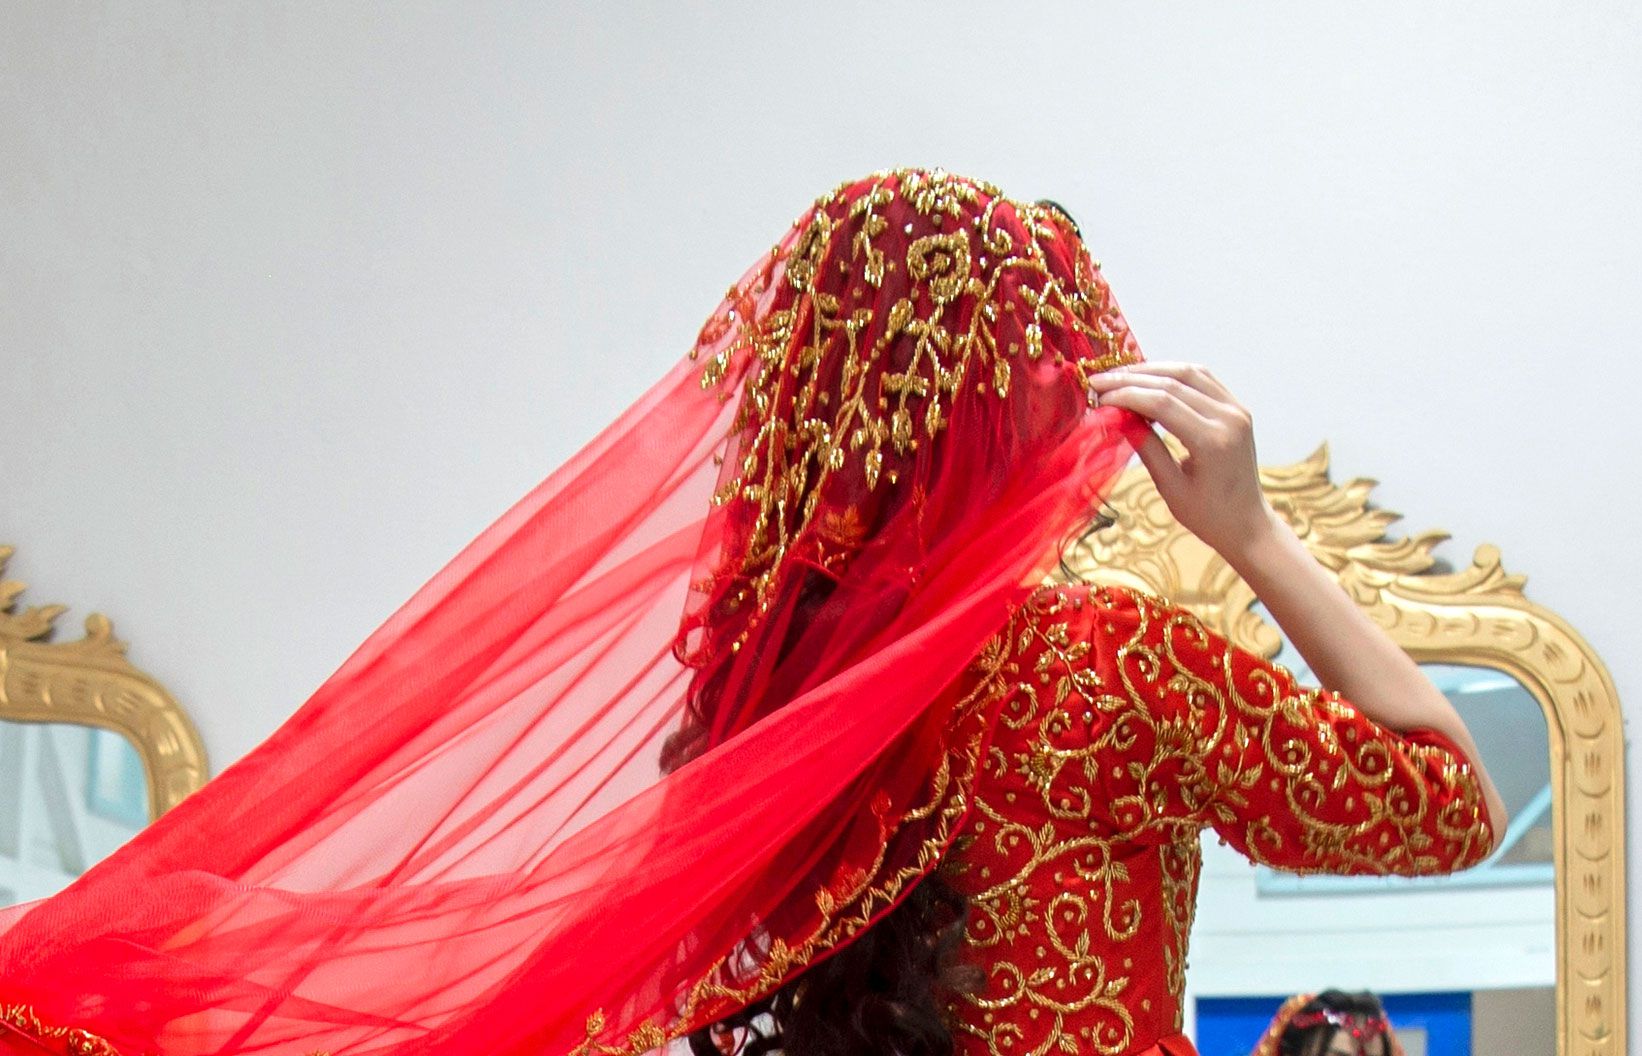 Naiset ryntäsivät talibanin kieltämiin kauneussalonkeihin kokemaan viimeisen hemmottelunsa